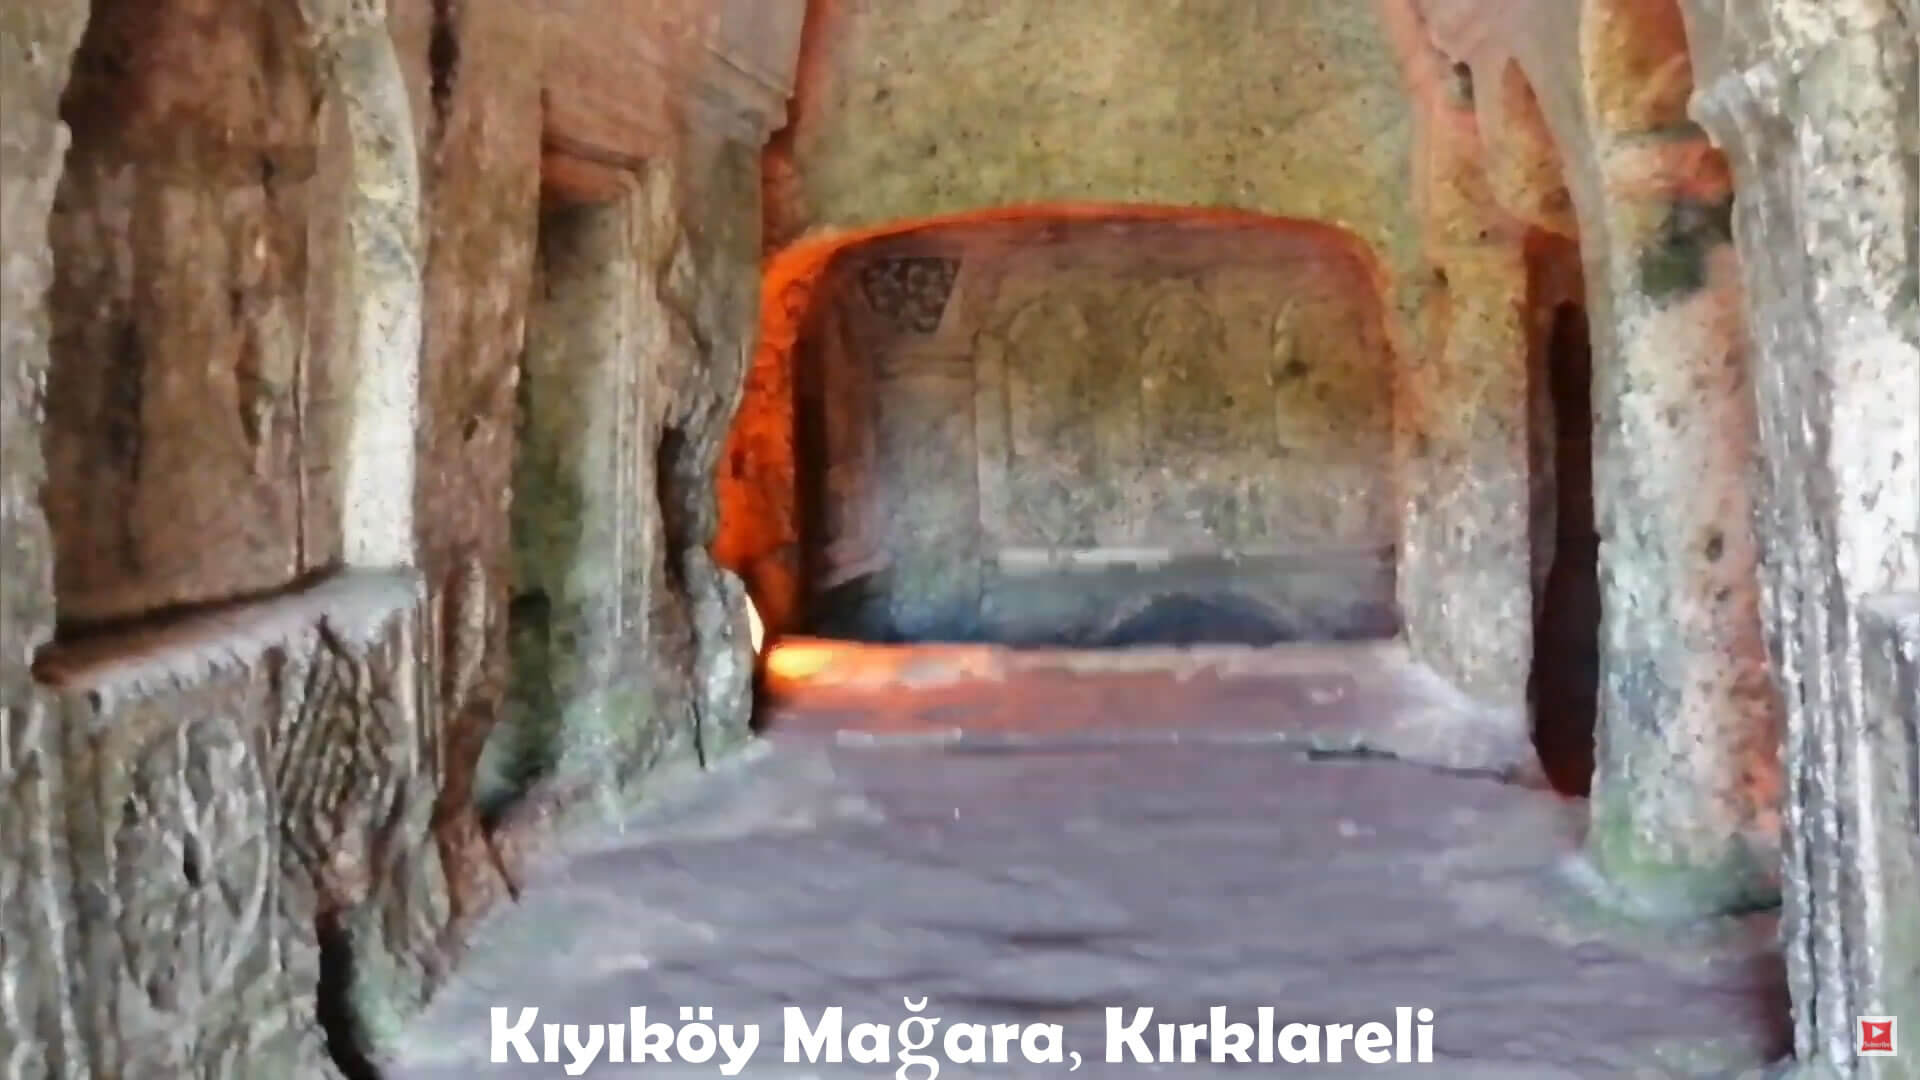 Kiyikoy Cave, Kirklareli